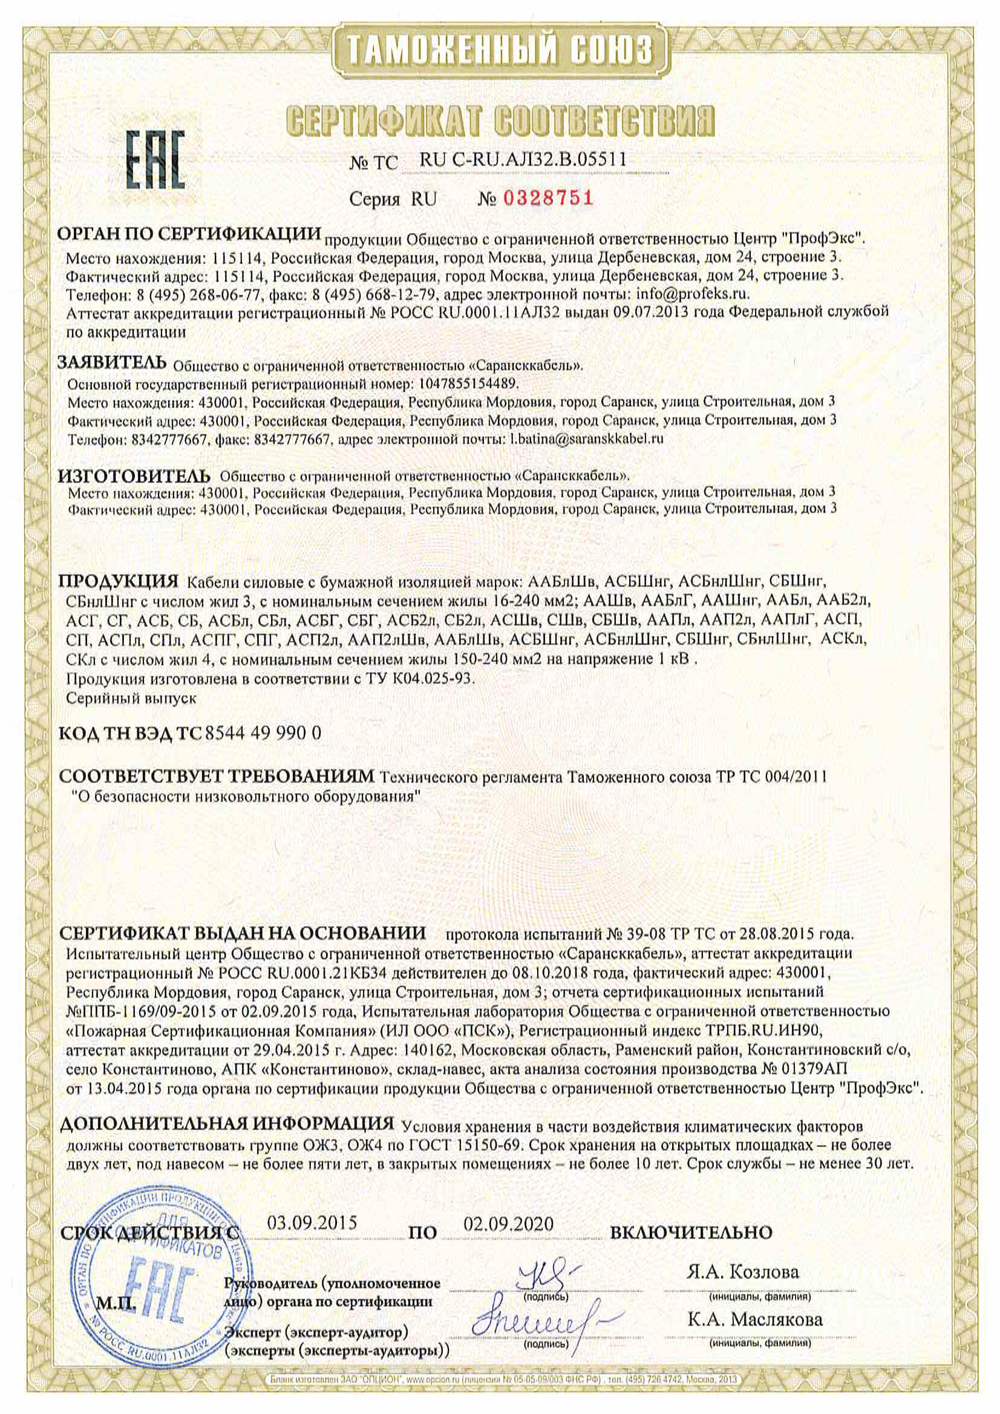 Сертификат соответствия кабелей АСБл, ЦАСБЛ, АСБ, ААБЛ  с бумажной изоляцией